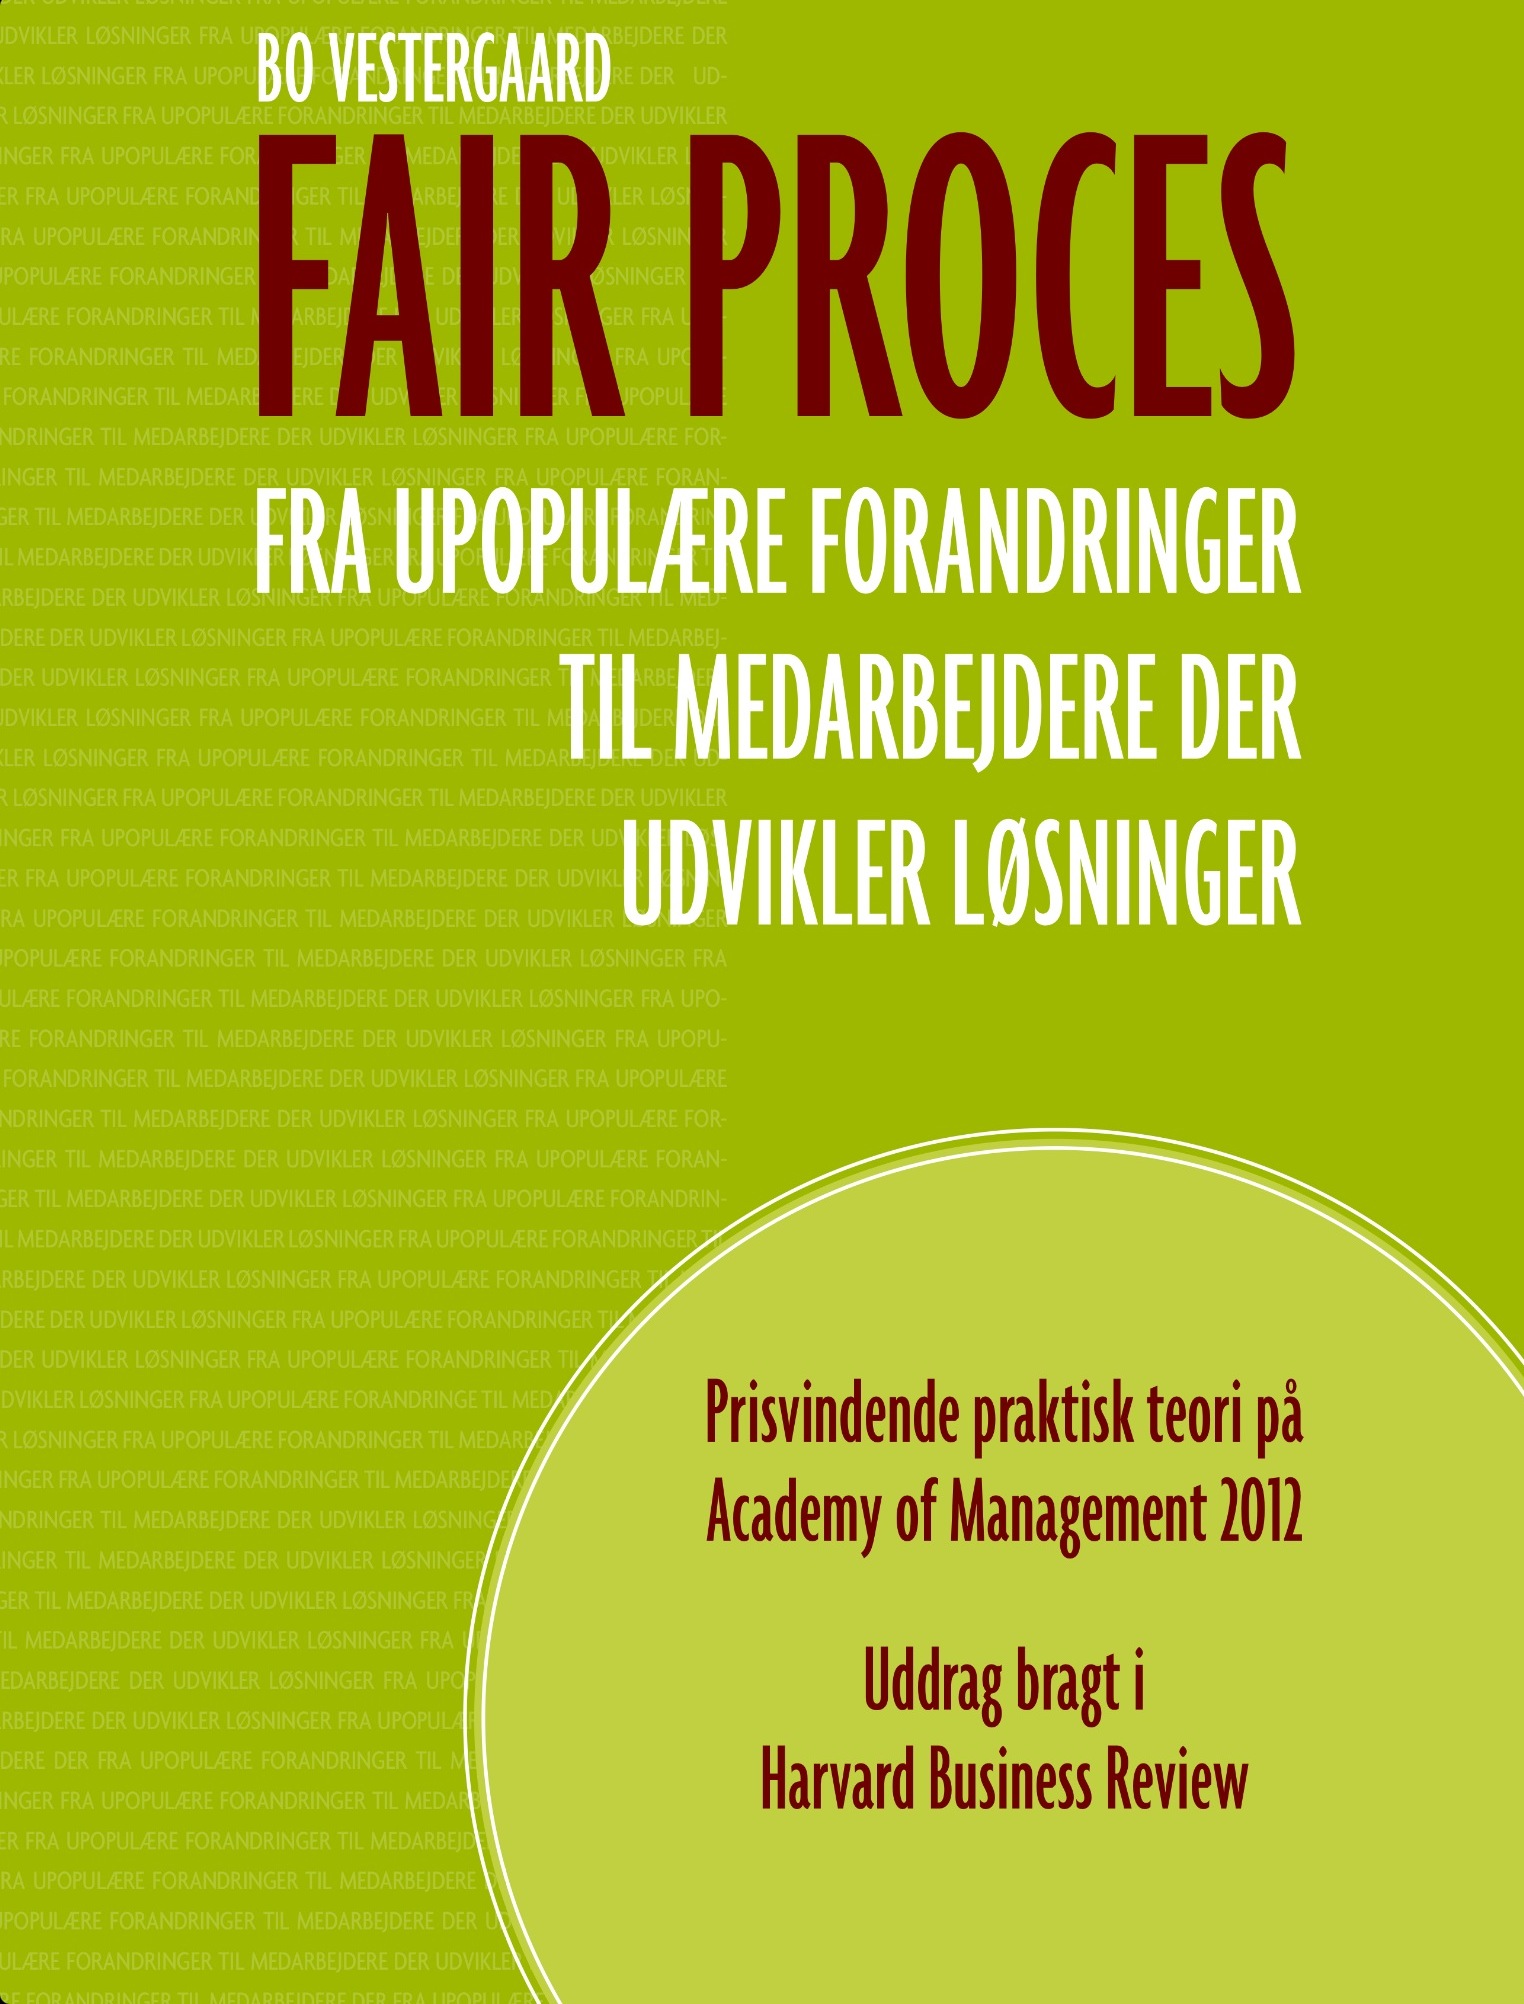 dk "Fair proces er et konkret svar på hvordan ledere styrker organisationens sociale kapital.